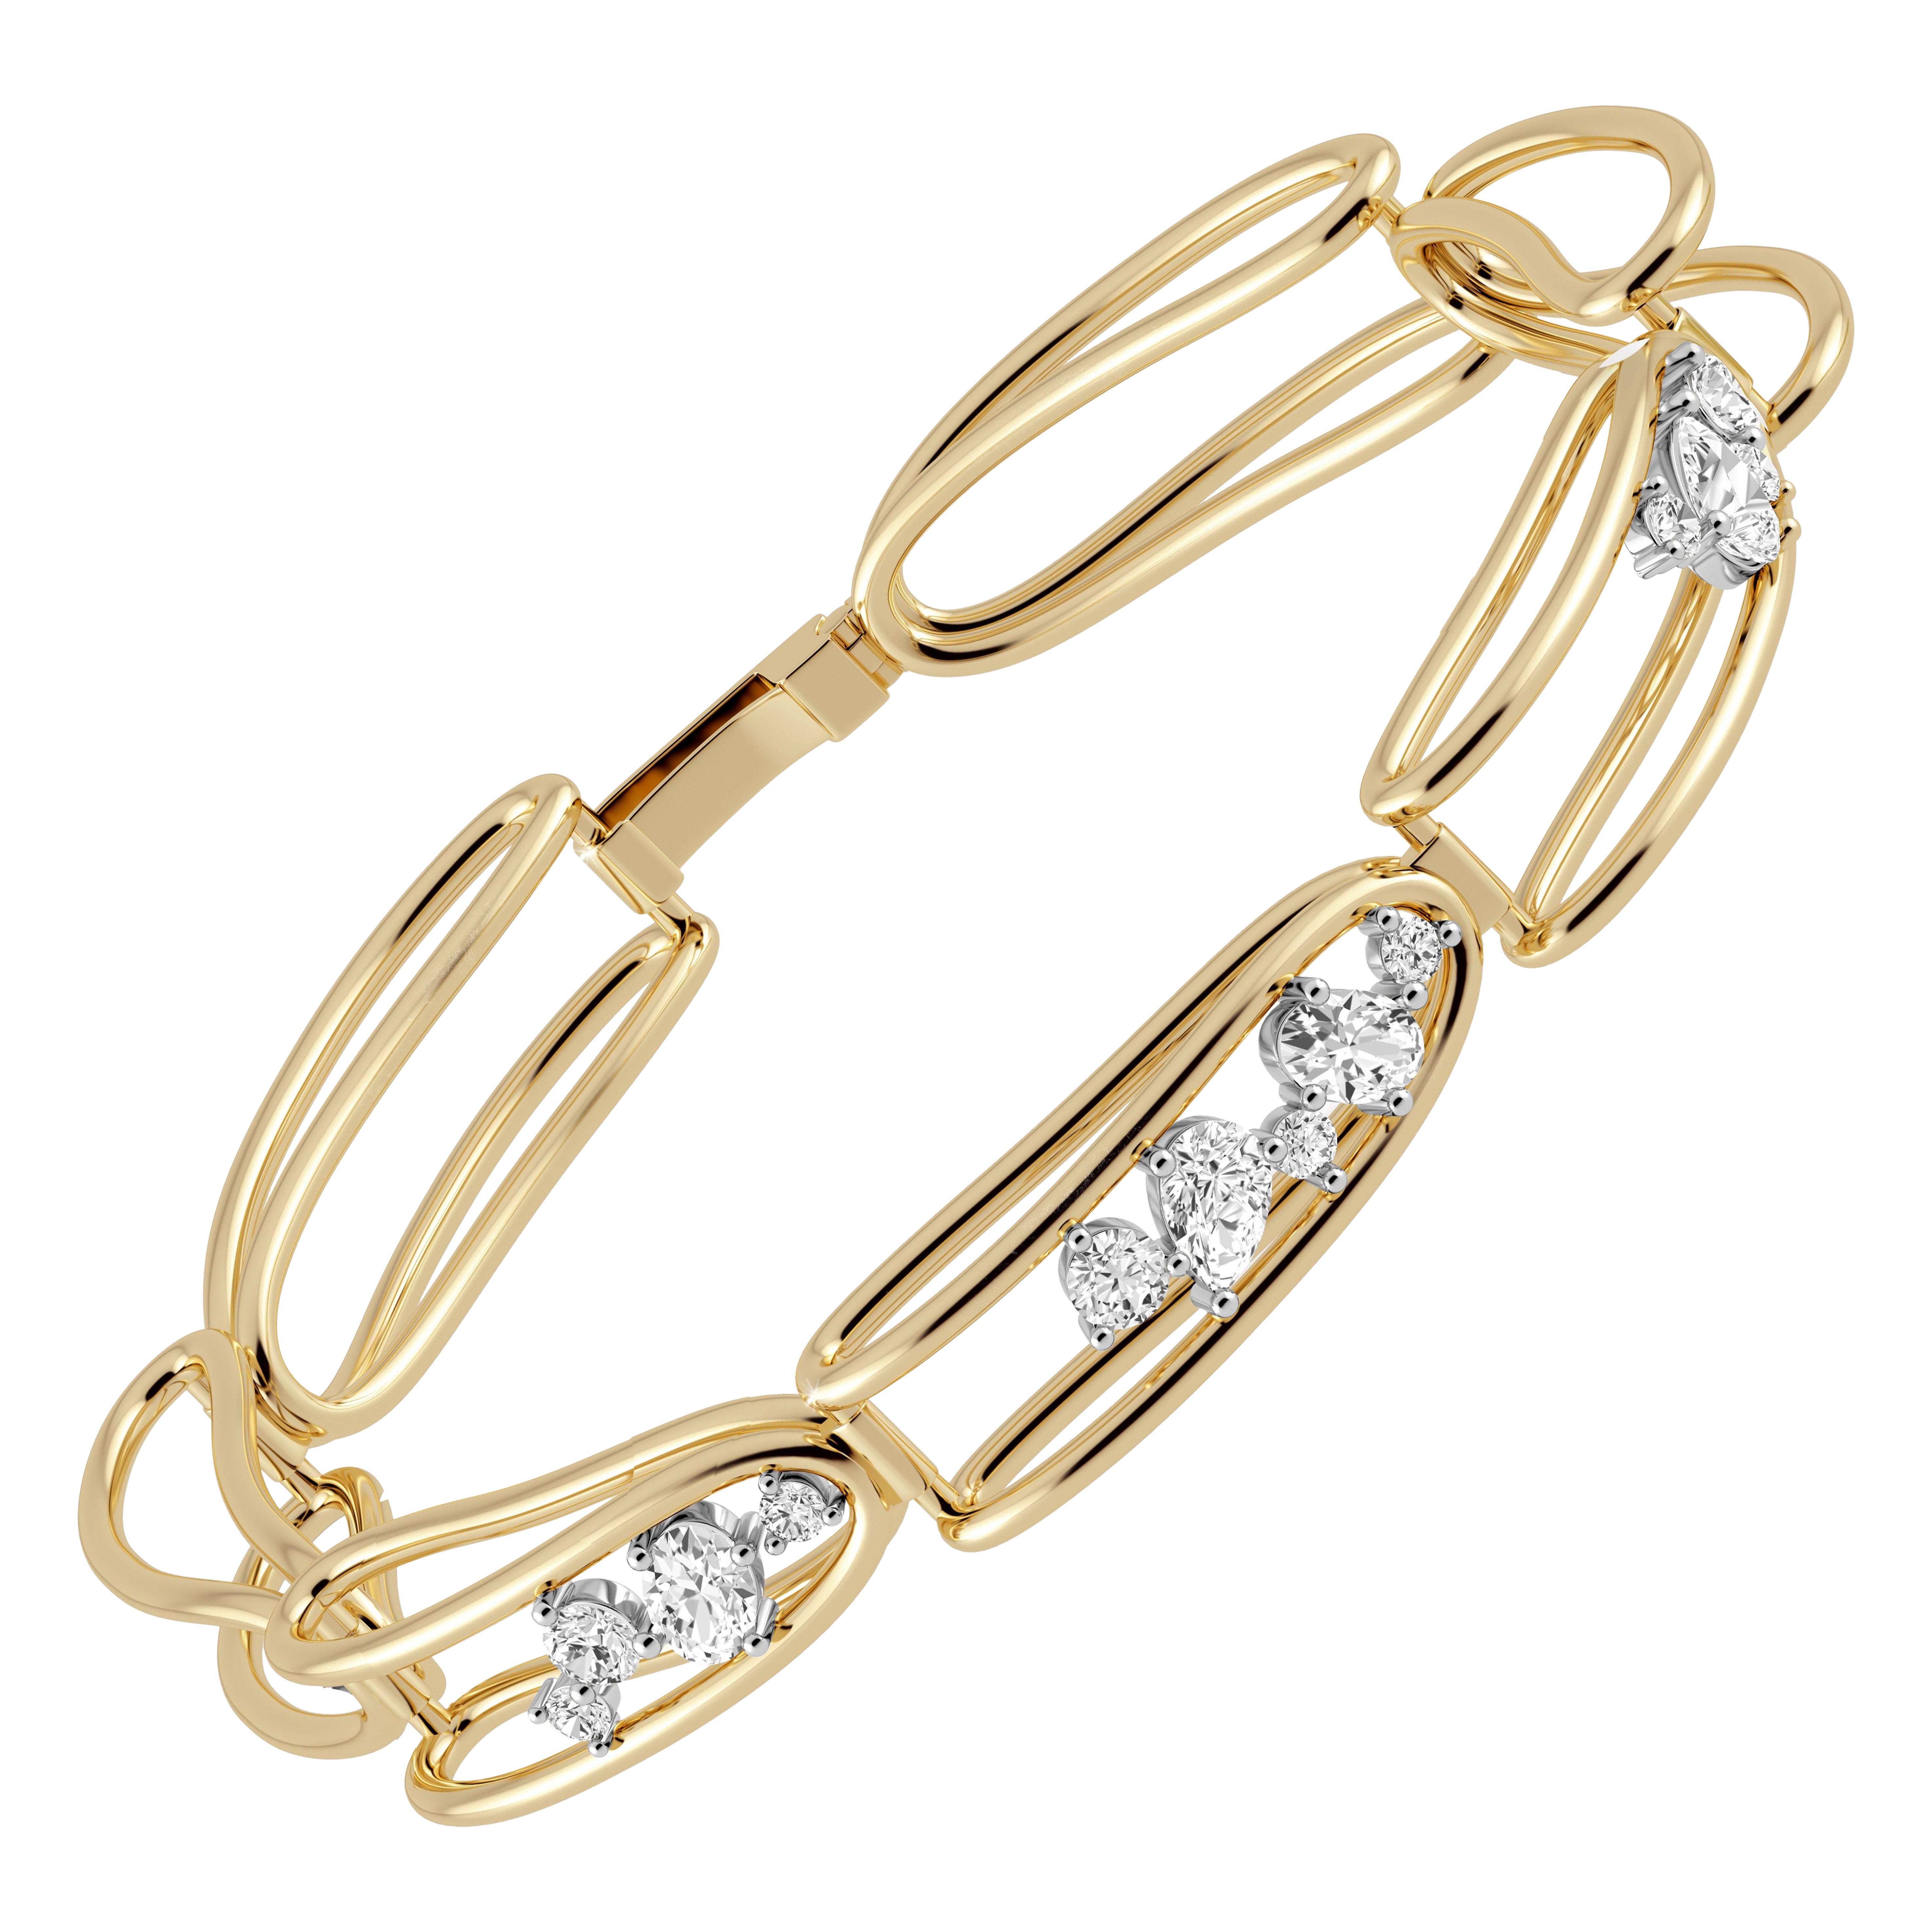 Rosario Navia Mara Folded Link Bracelet II in 18K Gold, Platinum, and Diamonds For Sale